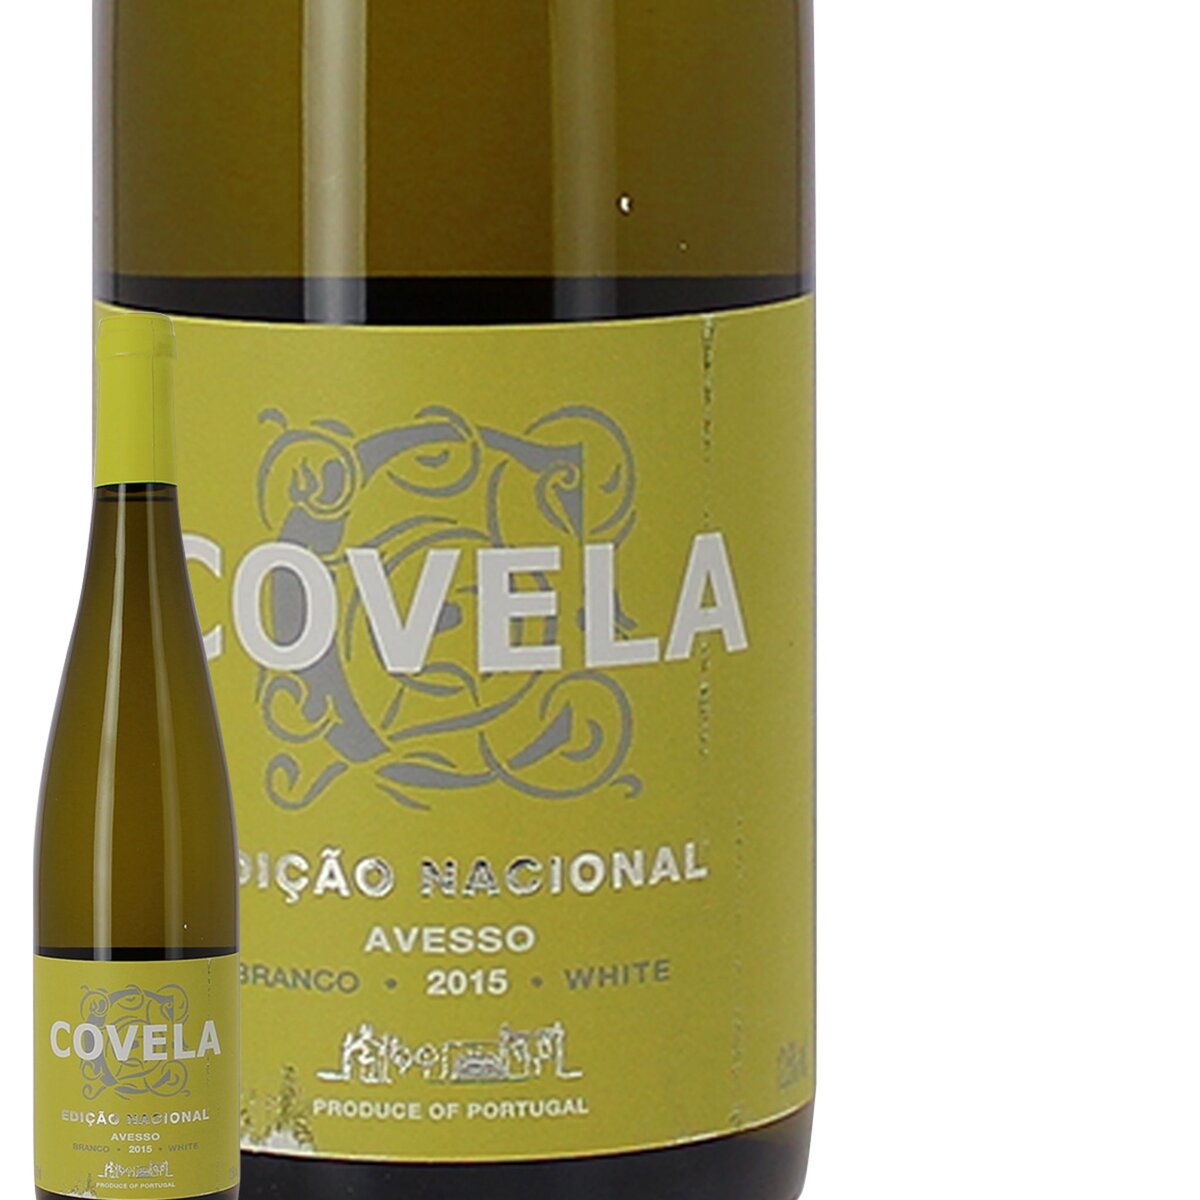 Covela Avesso Vinho Verde Edicao Nacional Portugal Blanc 2015